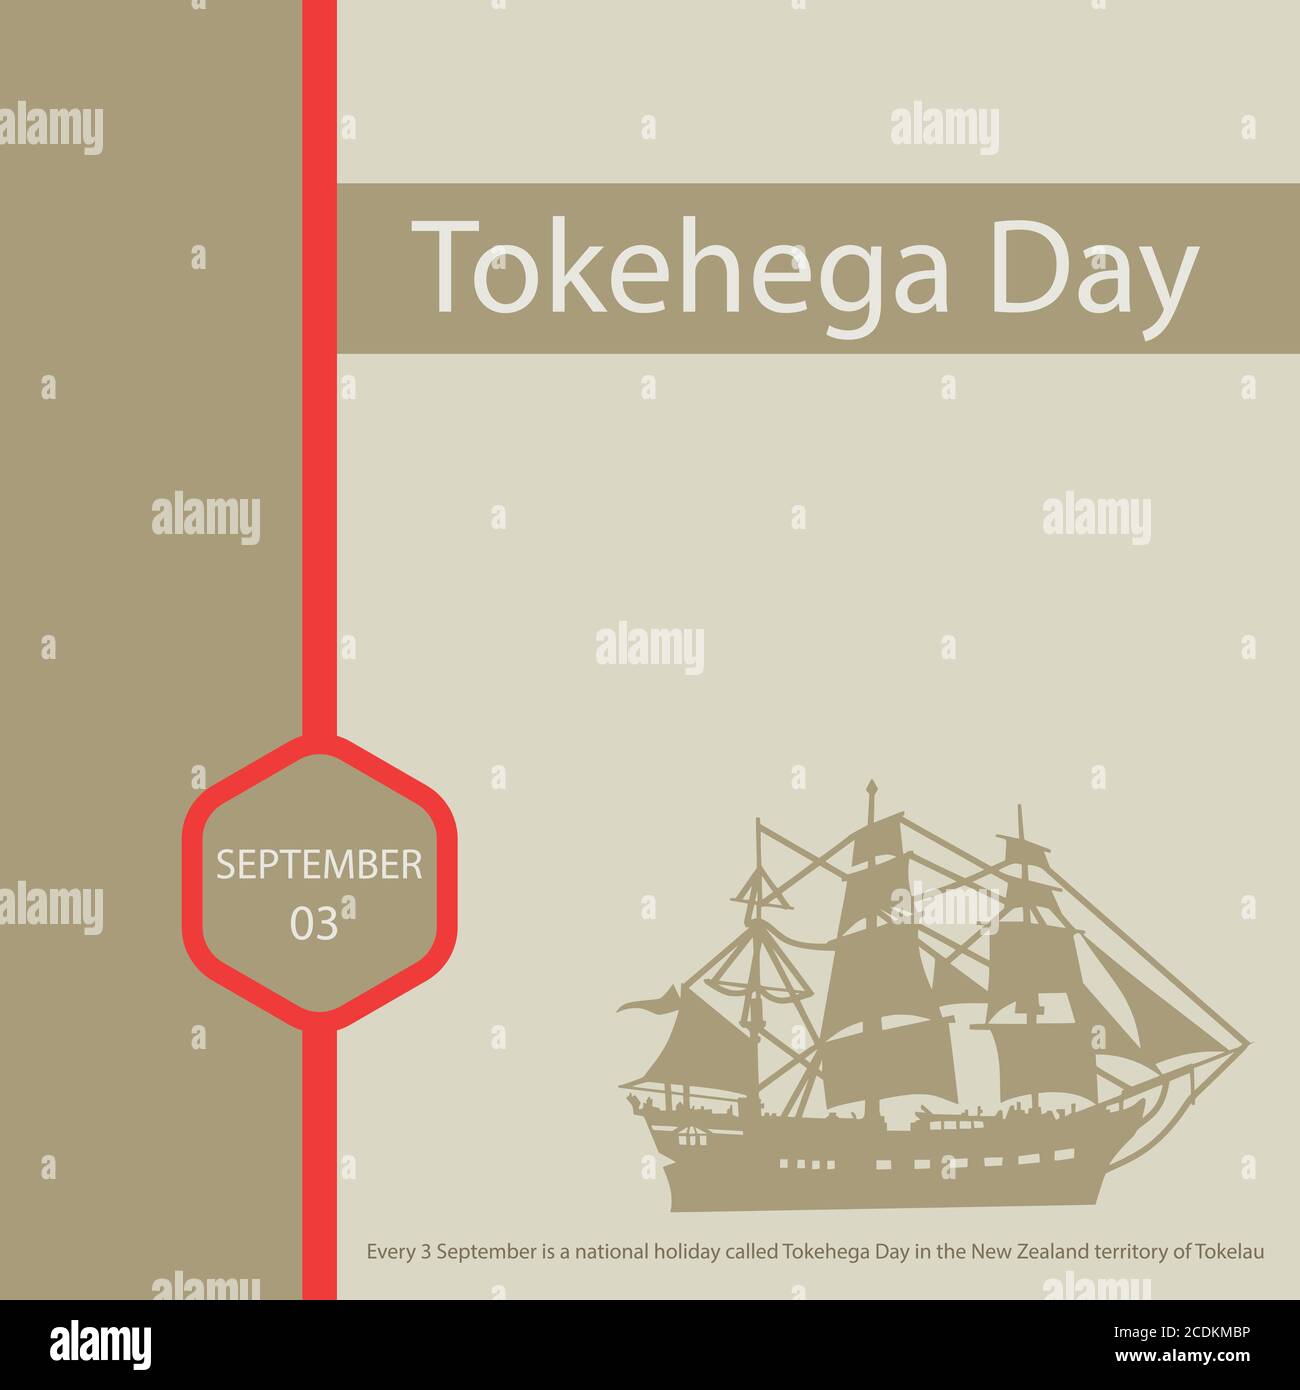 Jeder 3. September ist ein nationaler Feiertag, der Tokehega Tag im neuseeländischen Gebiet von Tokelau genannt wird. Stock Vektor